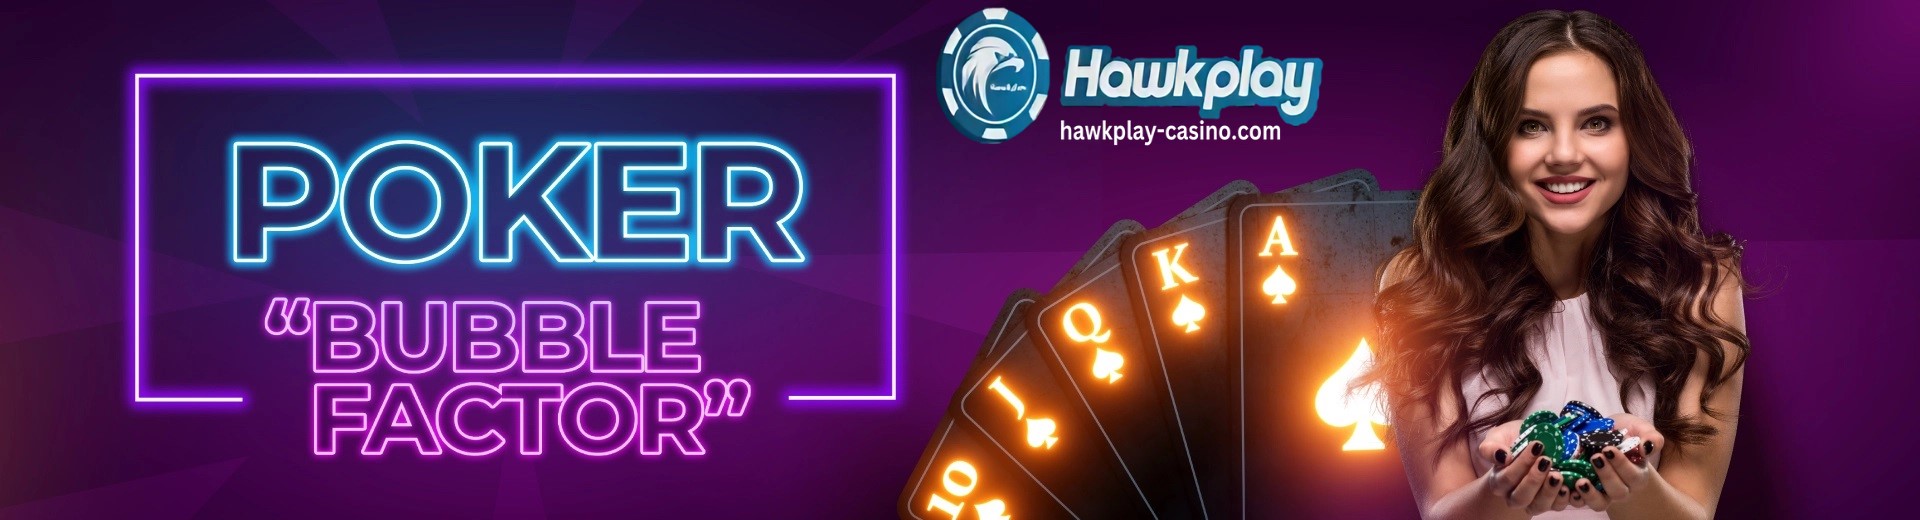 Ang Bubble Factor sa Poker Hawkplay